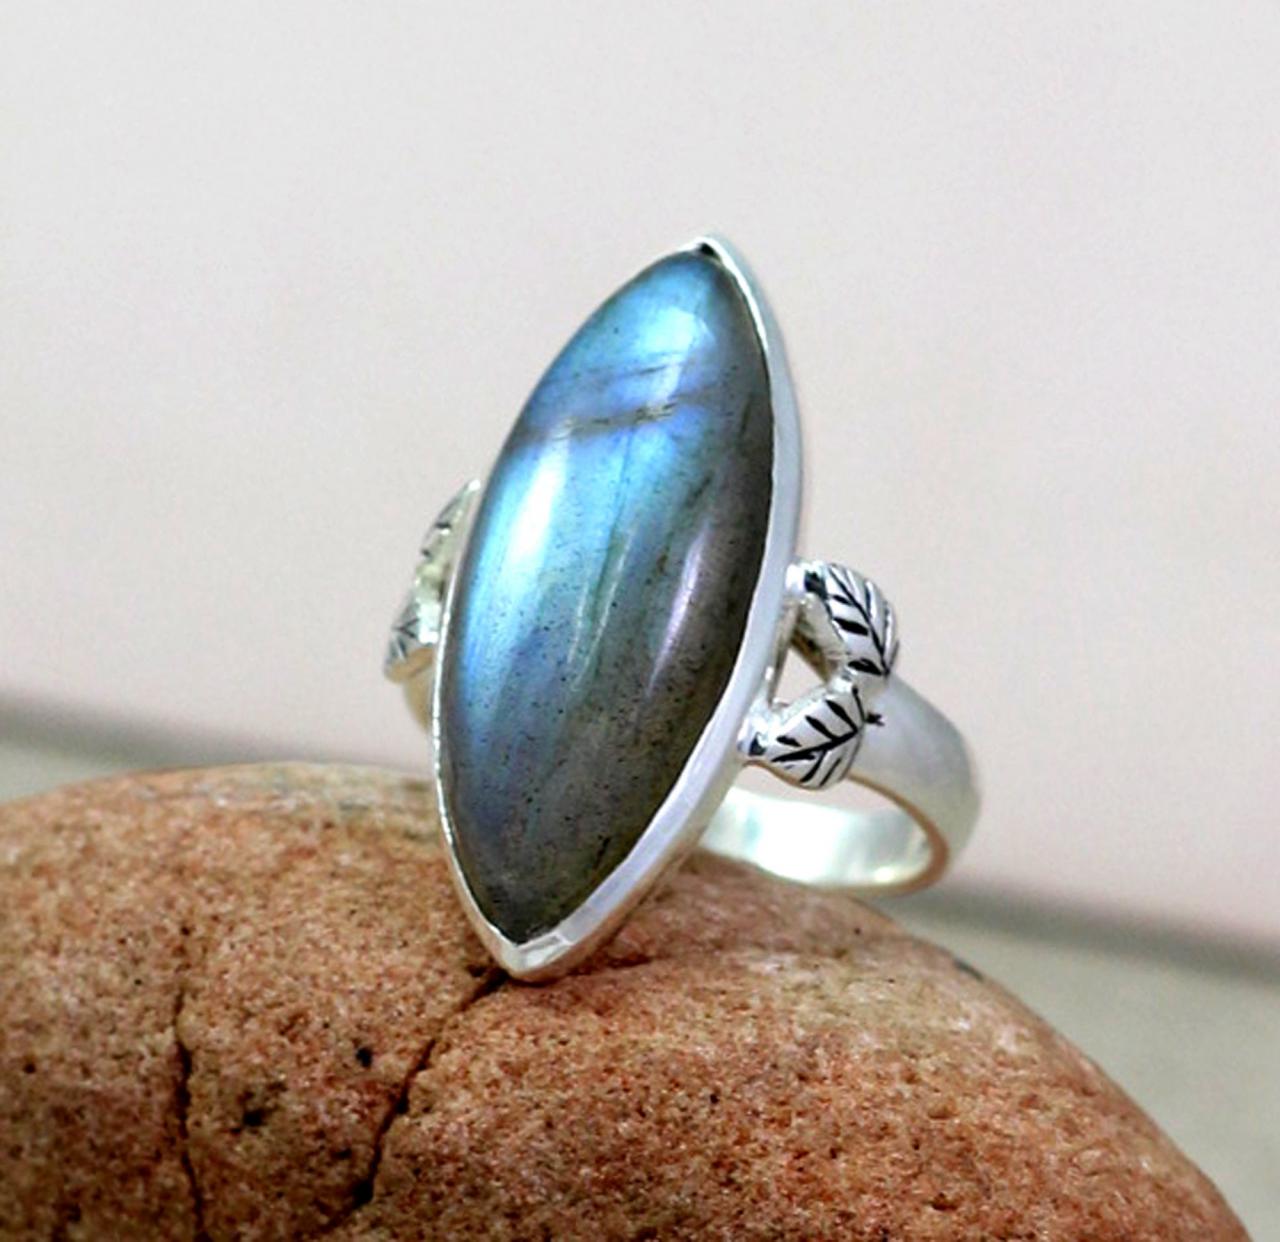 Labradorite Ring, Gemstone Ring, Wedding Ring, 925 Sterling Silver Ring, Marquise Ring, Handmade Designer Ring, Engagement Ring Jewelry